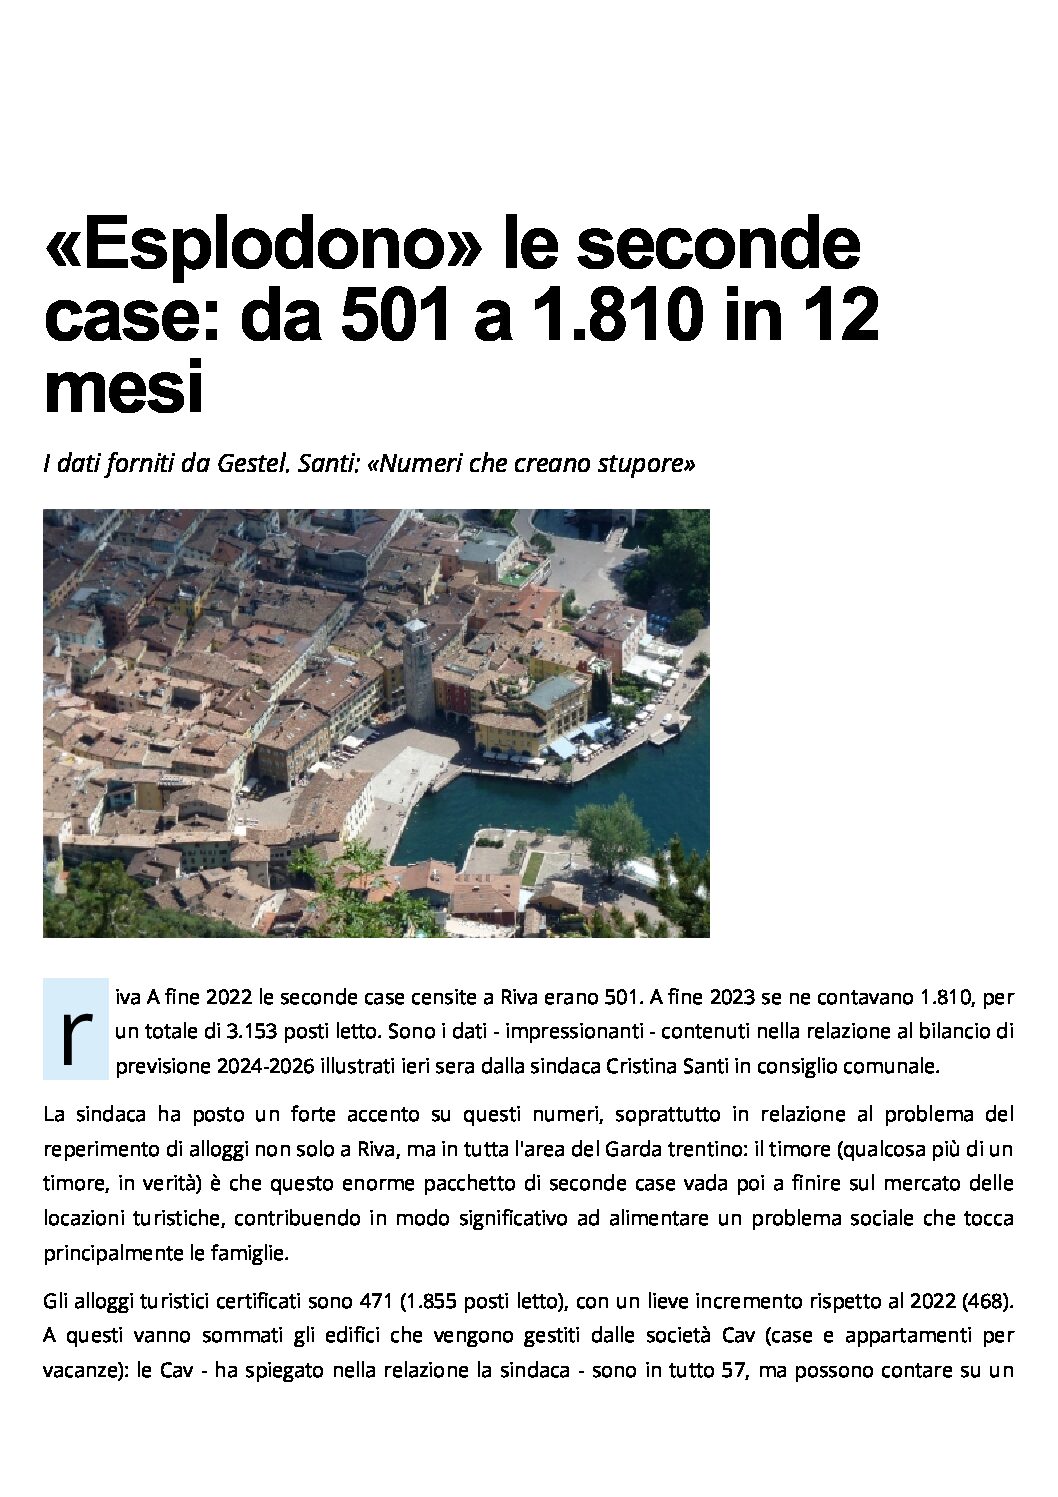 Riva: esplodono le seconde case, da 501 a 1810 in 12 mesi